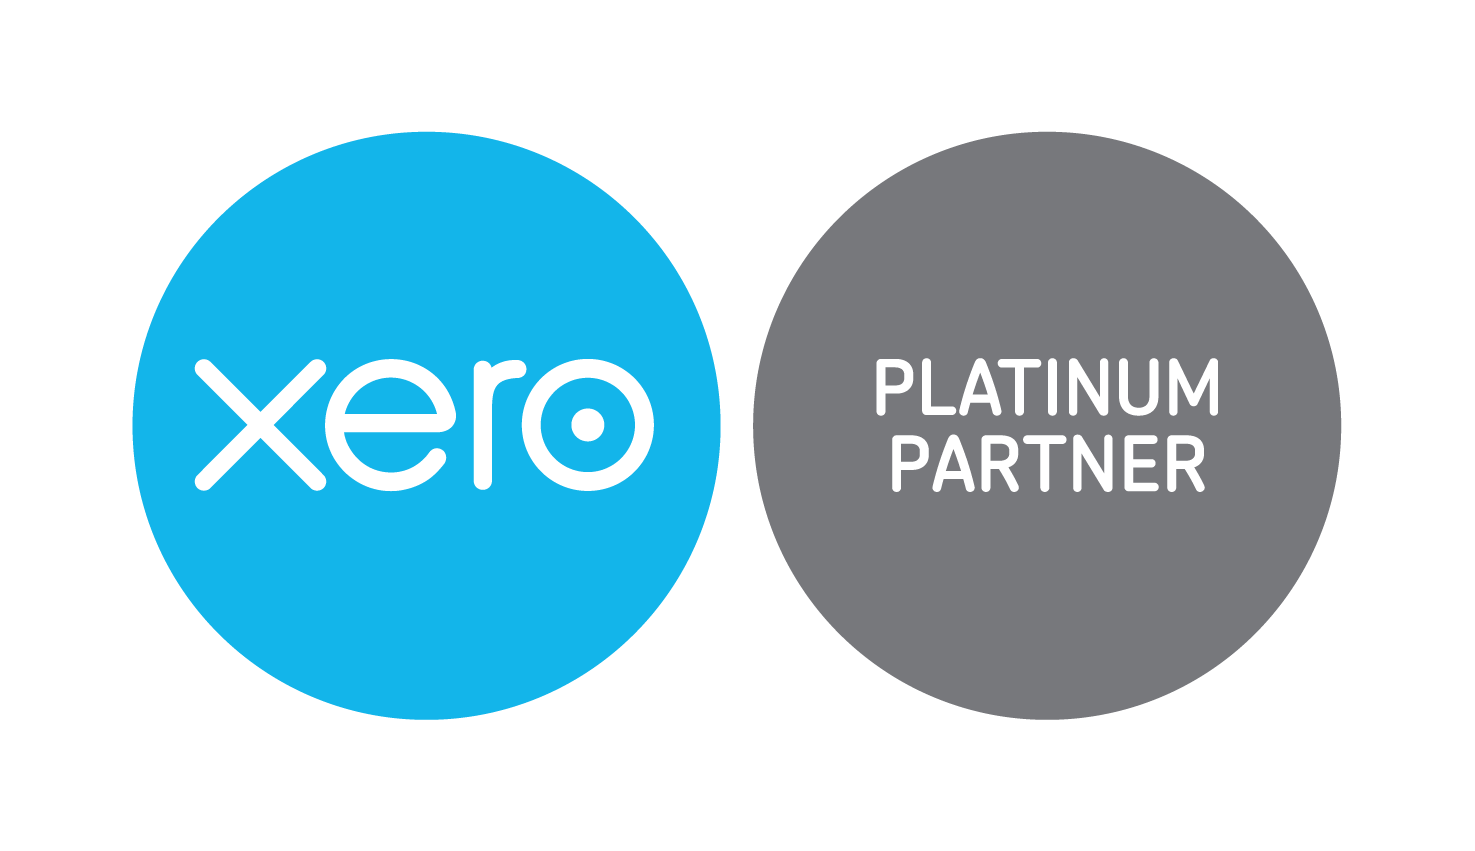 xero-platinum-partner-badge-RGB